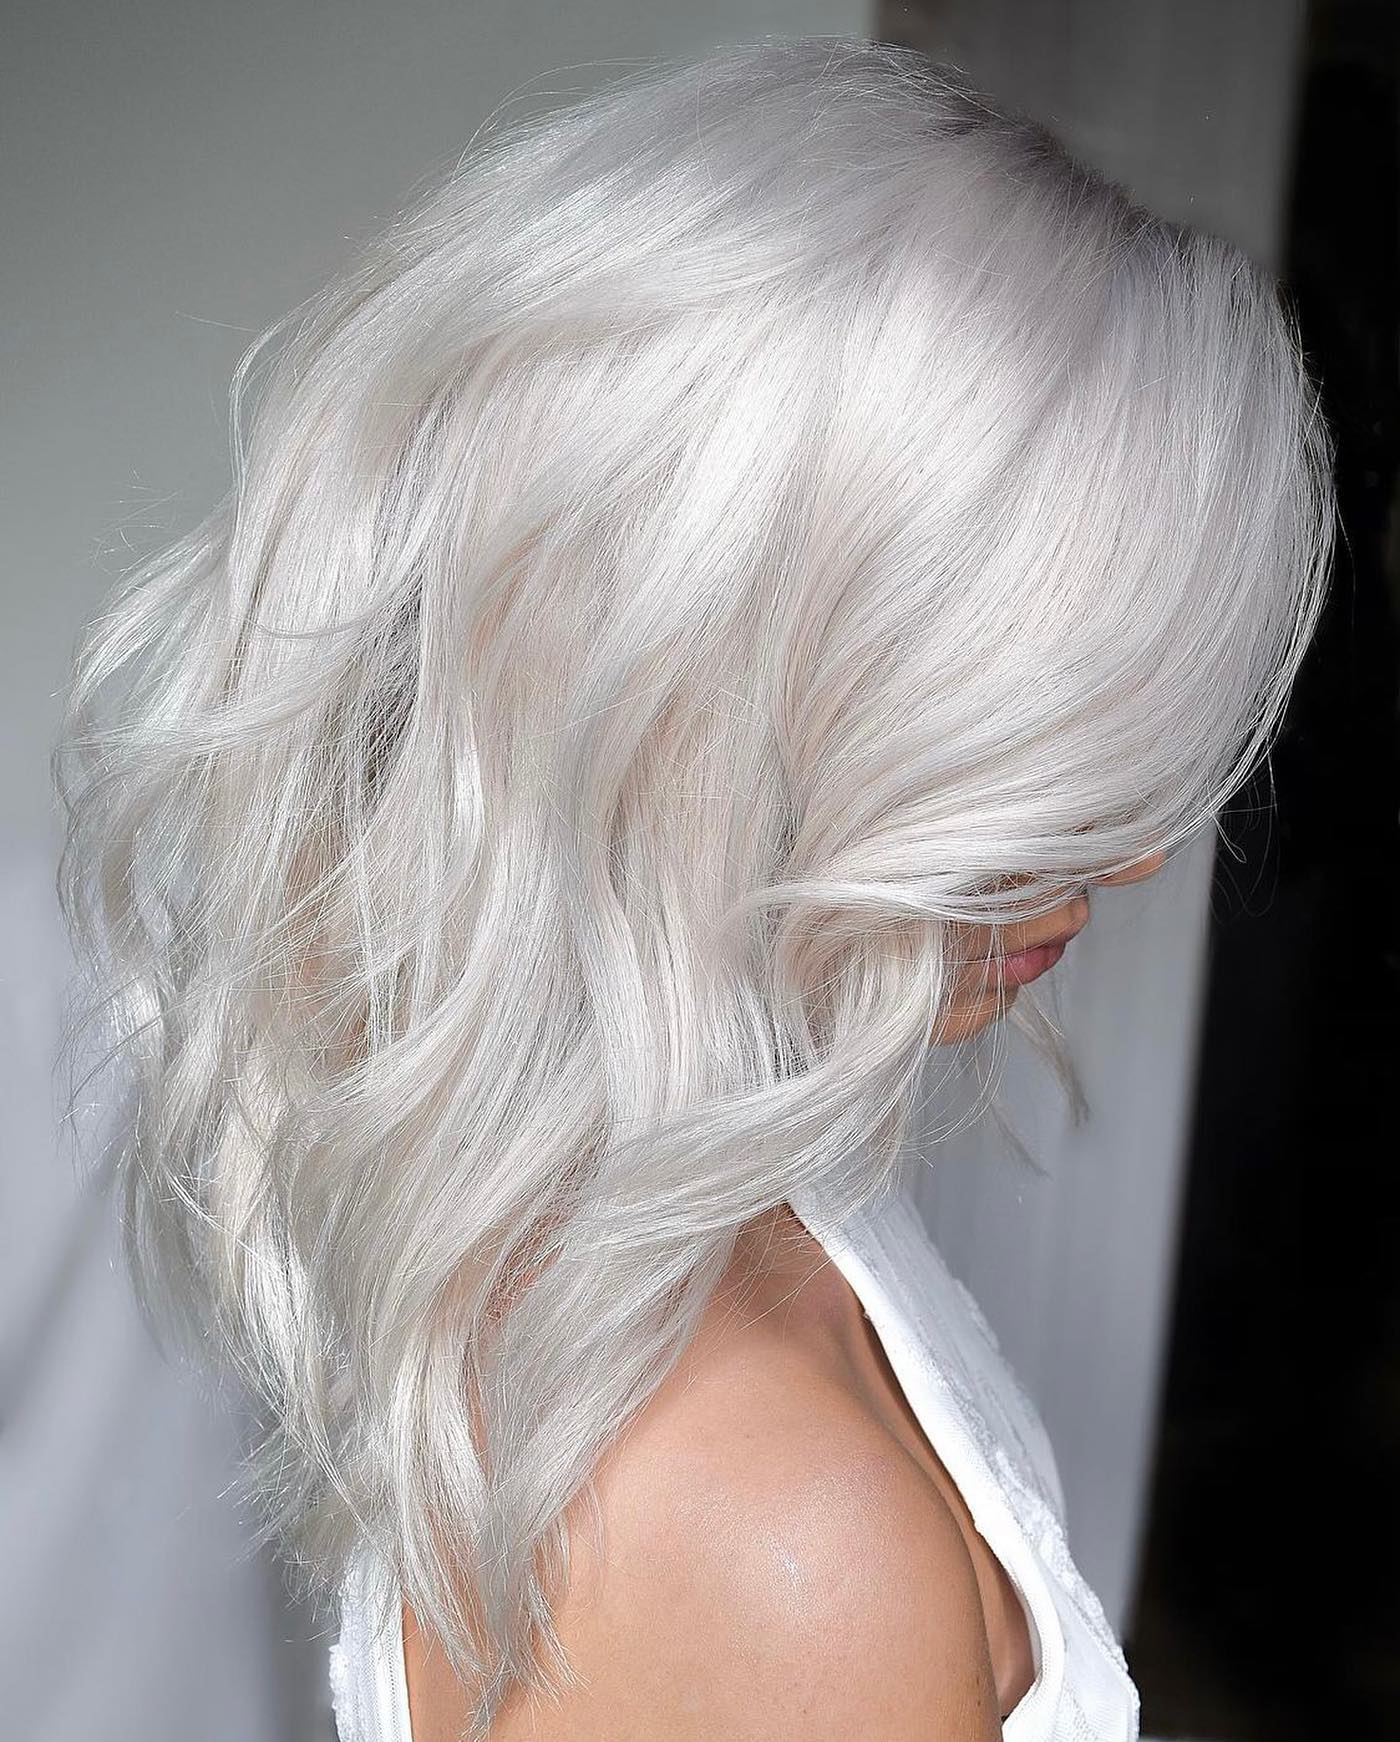 Blonde coloring: 30 bold, elegant options